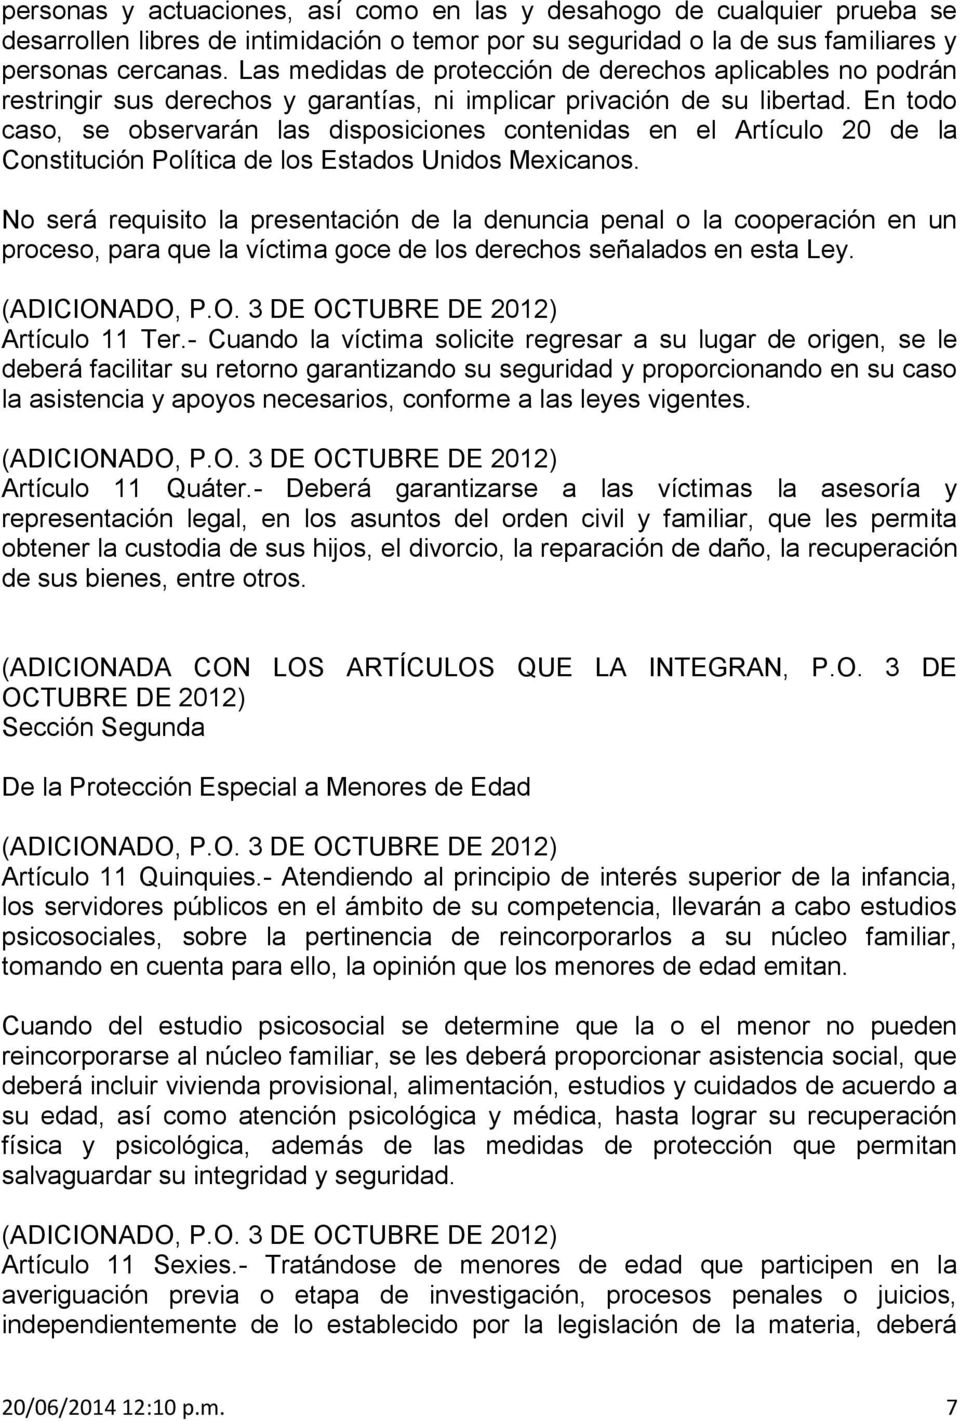 En todo caso, se observarán las disposiciones contenidas en el Artículo 20 de la Constitución Política de los Estados Unidos Mexicanos.